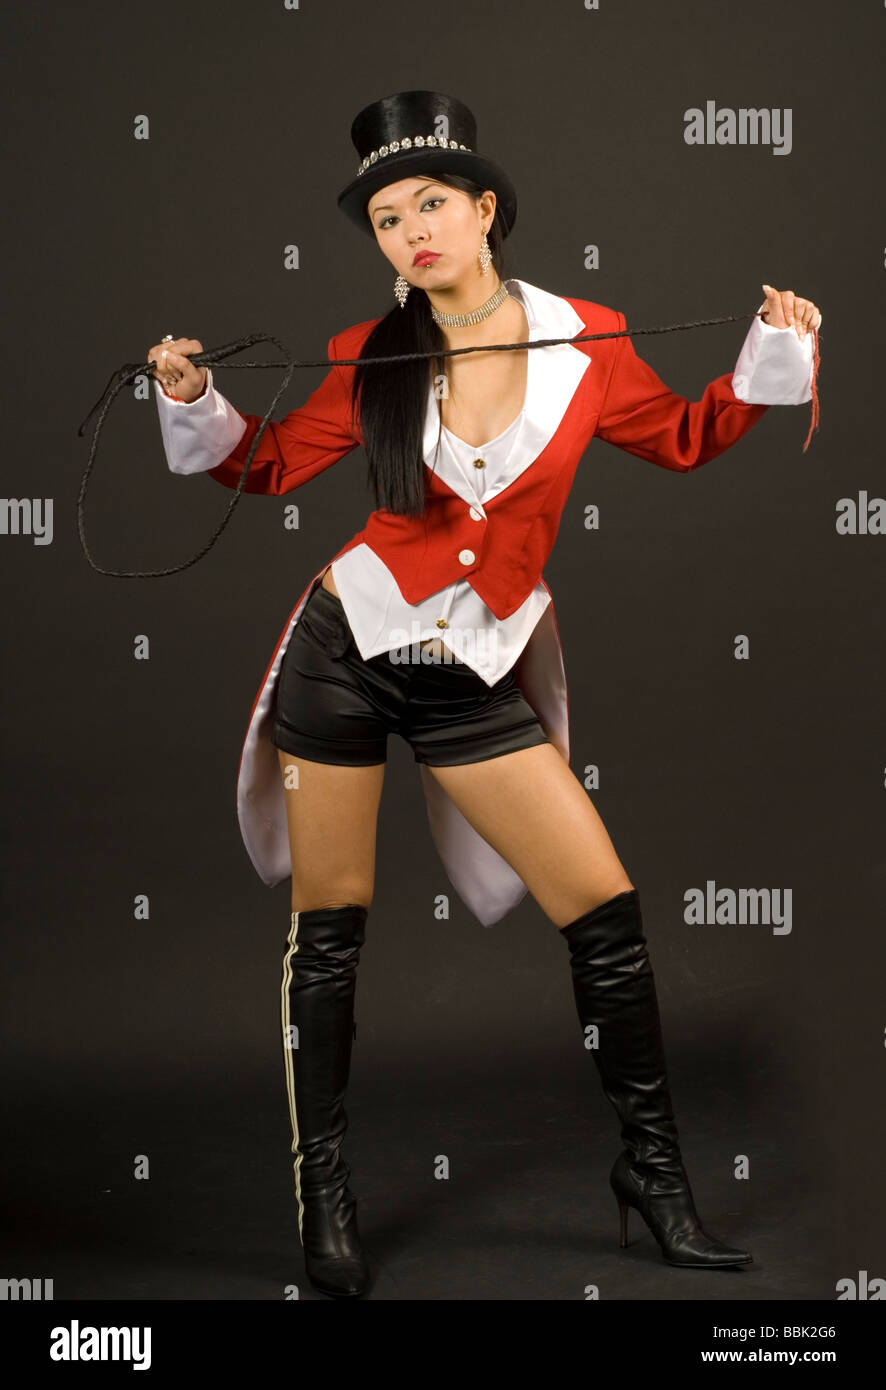 Girl in Ringmaster costume Stock Photo